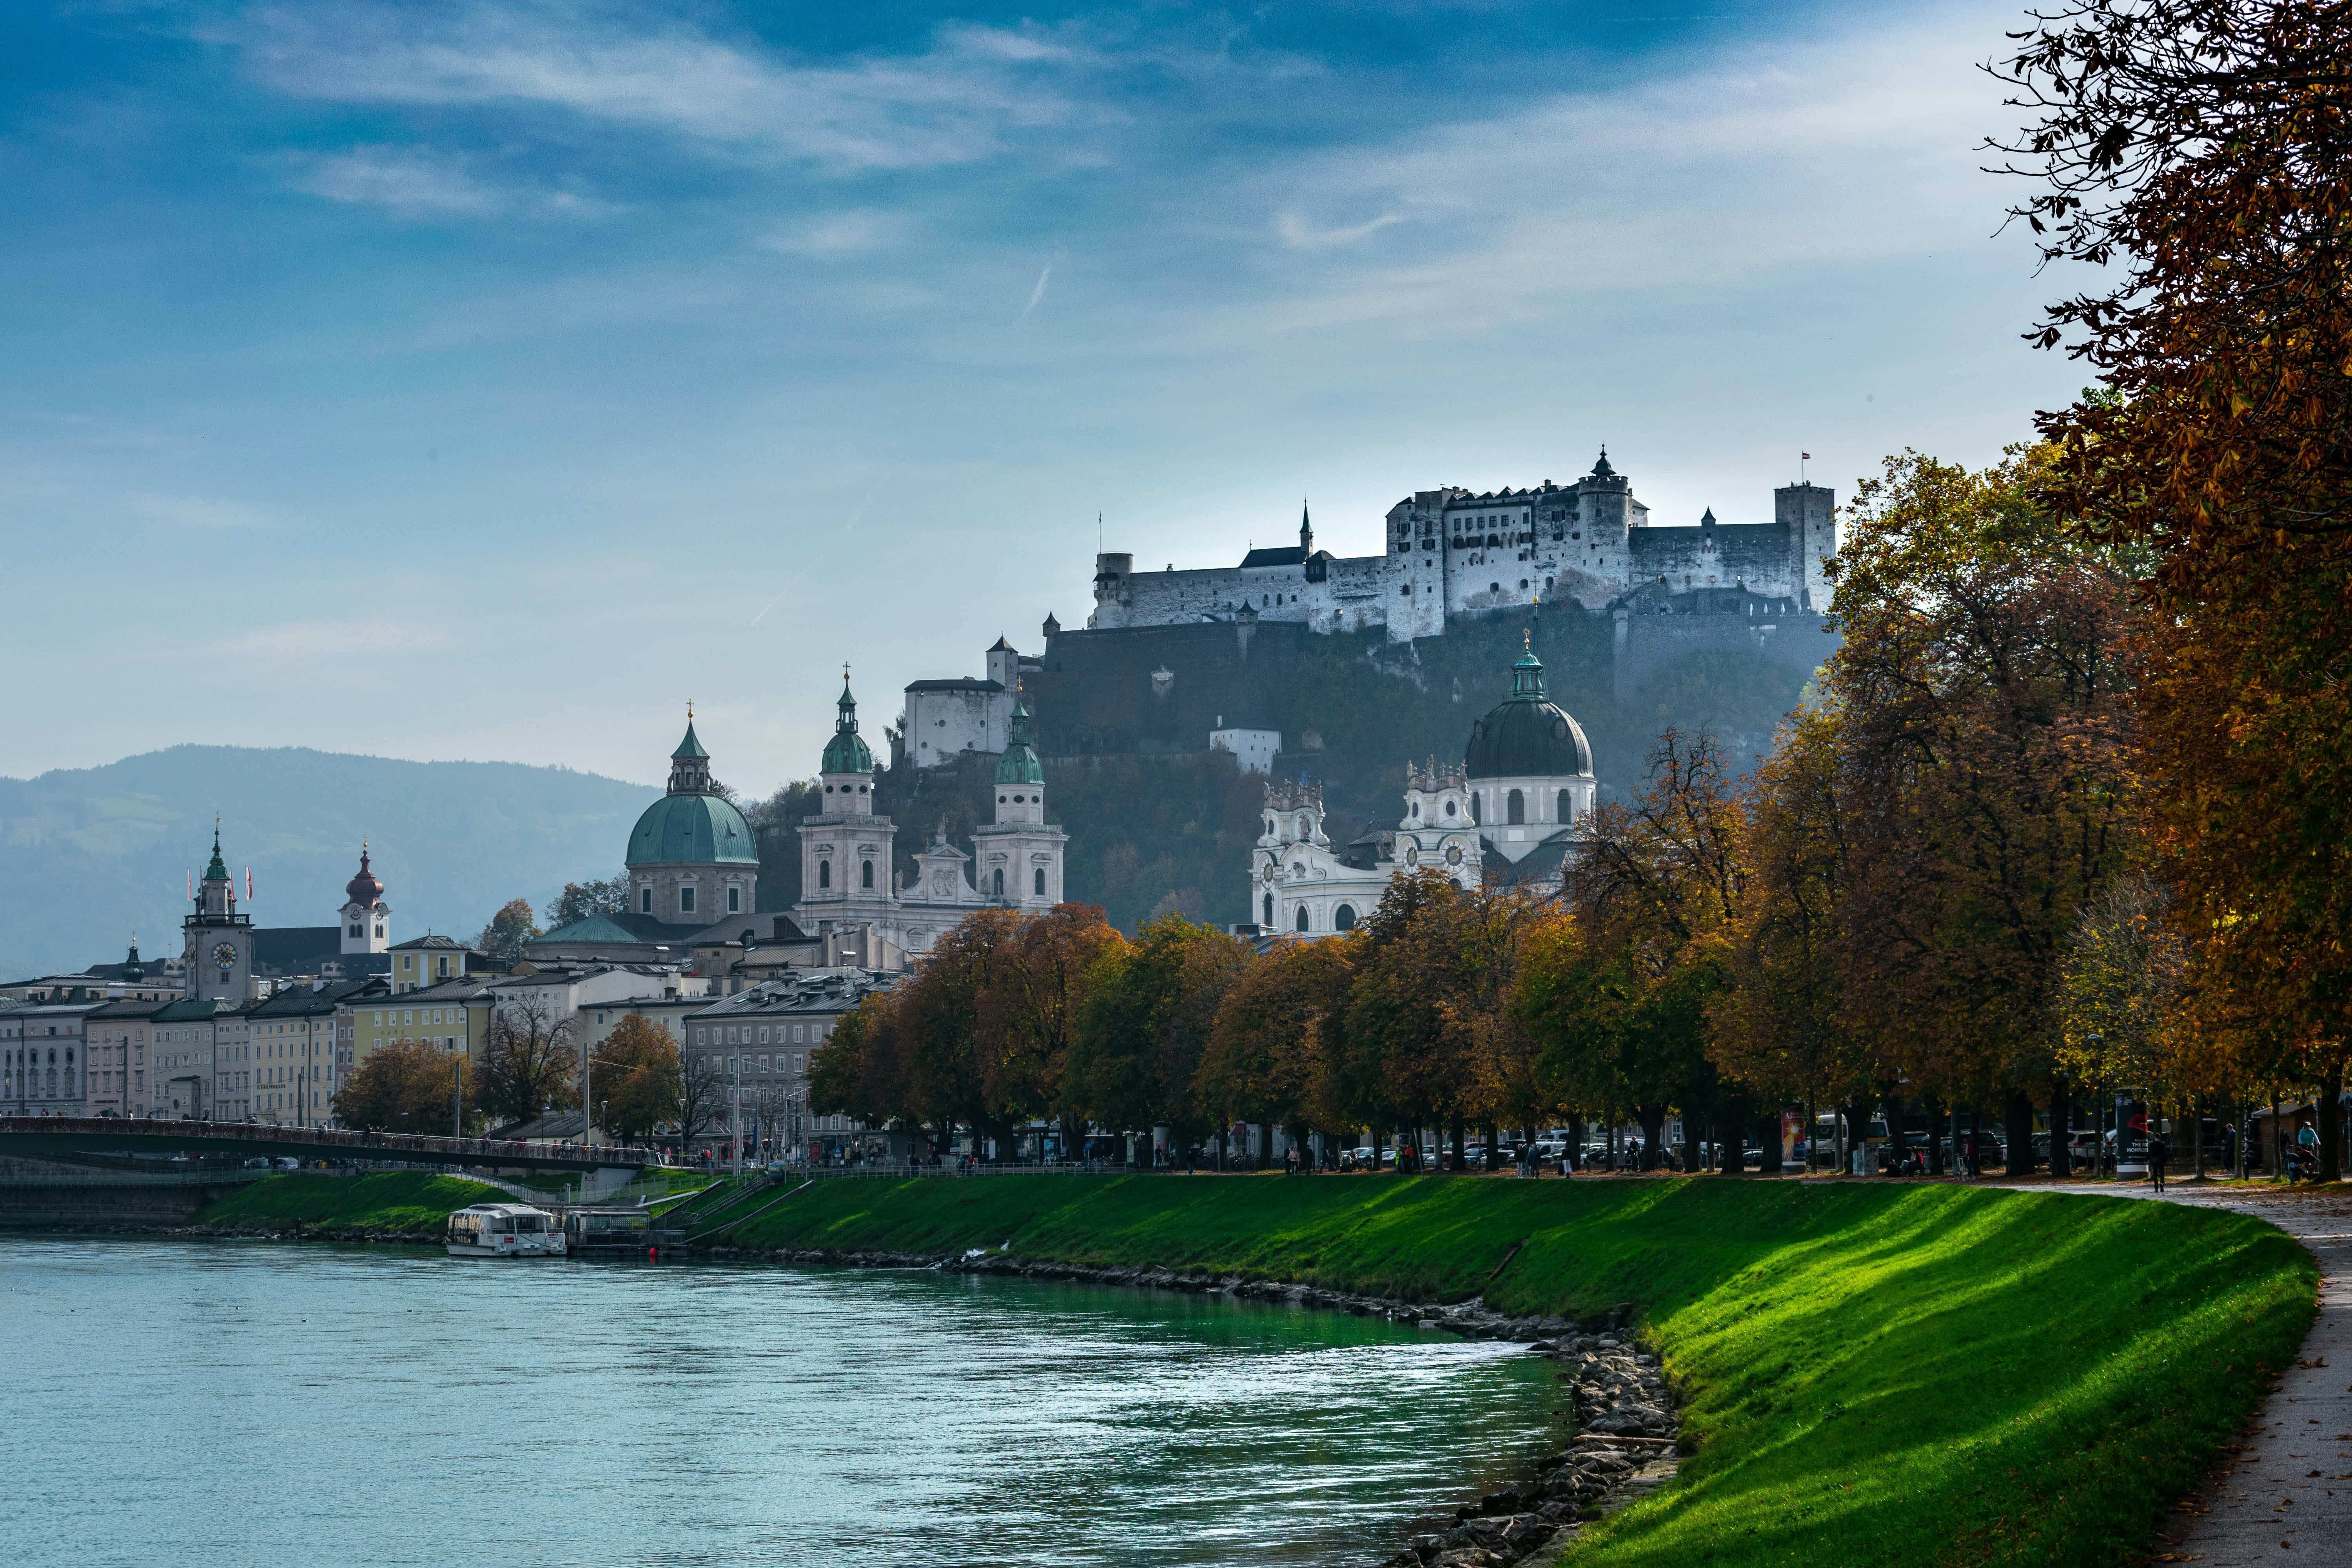 Entdecken Sie die hohe Lebensqualität und regionale Besonderheiten von Flachau in Salzburg. Erleben Sie die malerische Landschaft und die kulturellen Schätze der Region.